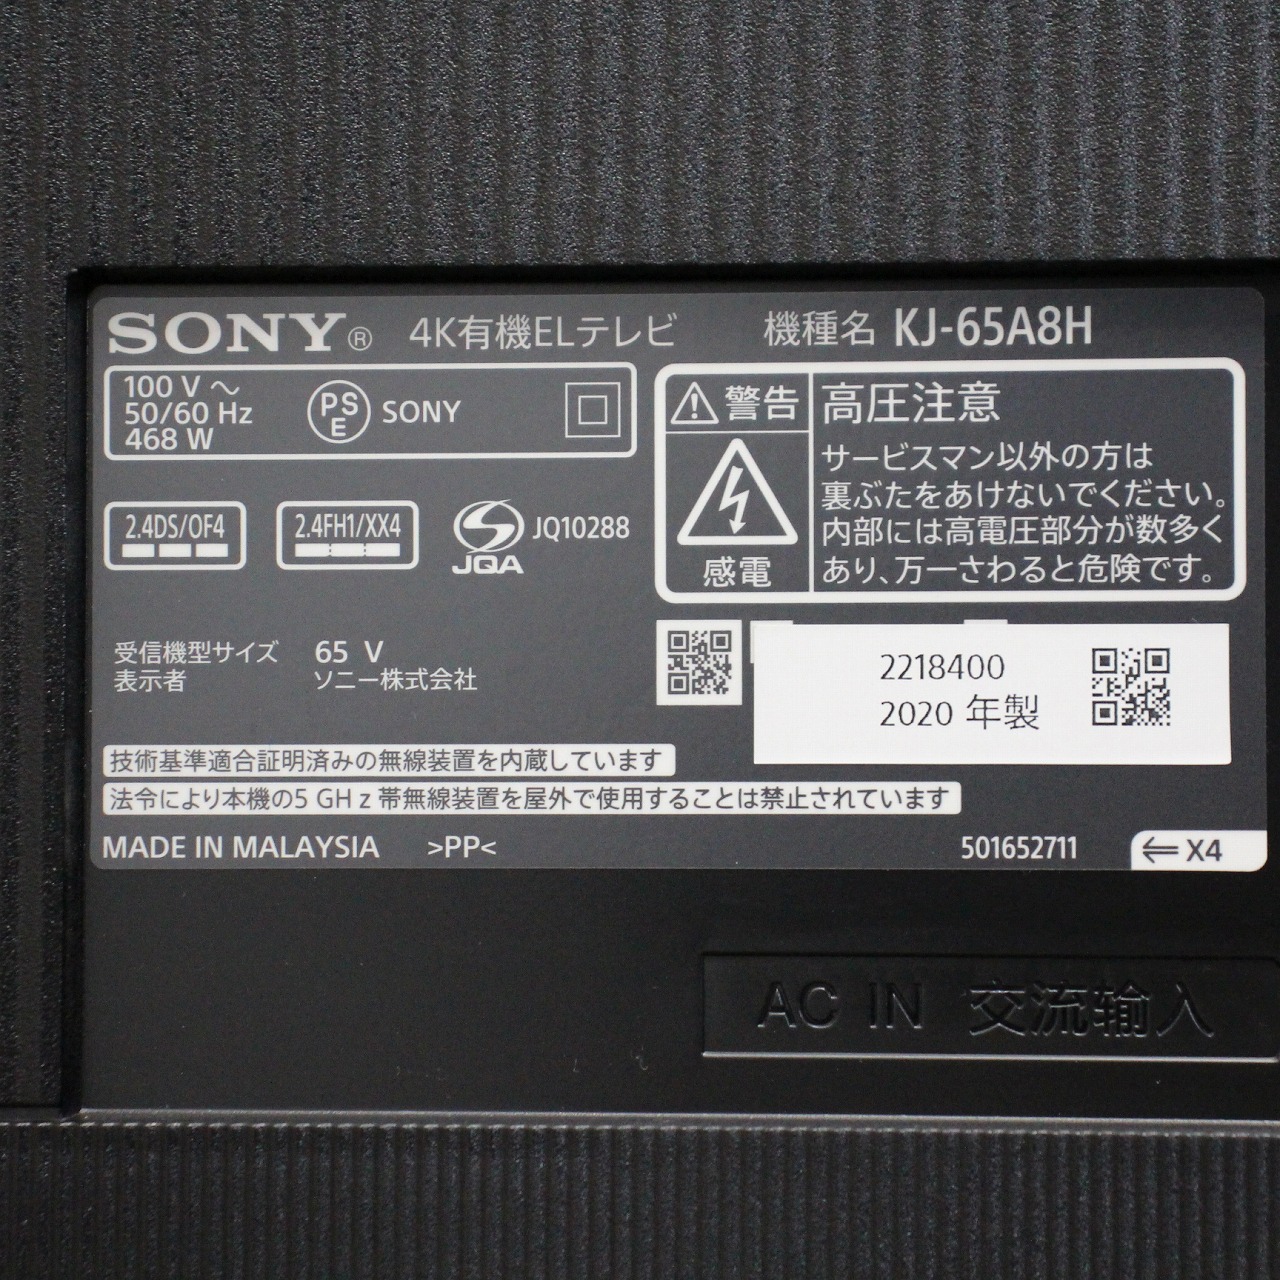 【4K有機ELテレビ】Sony BRAVIA KJ-65A8H BLACK